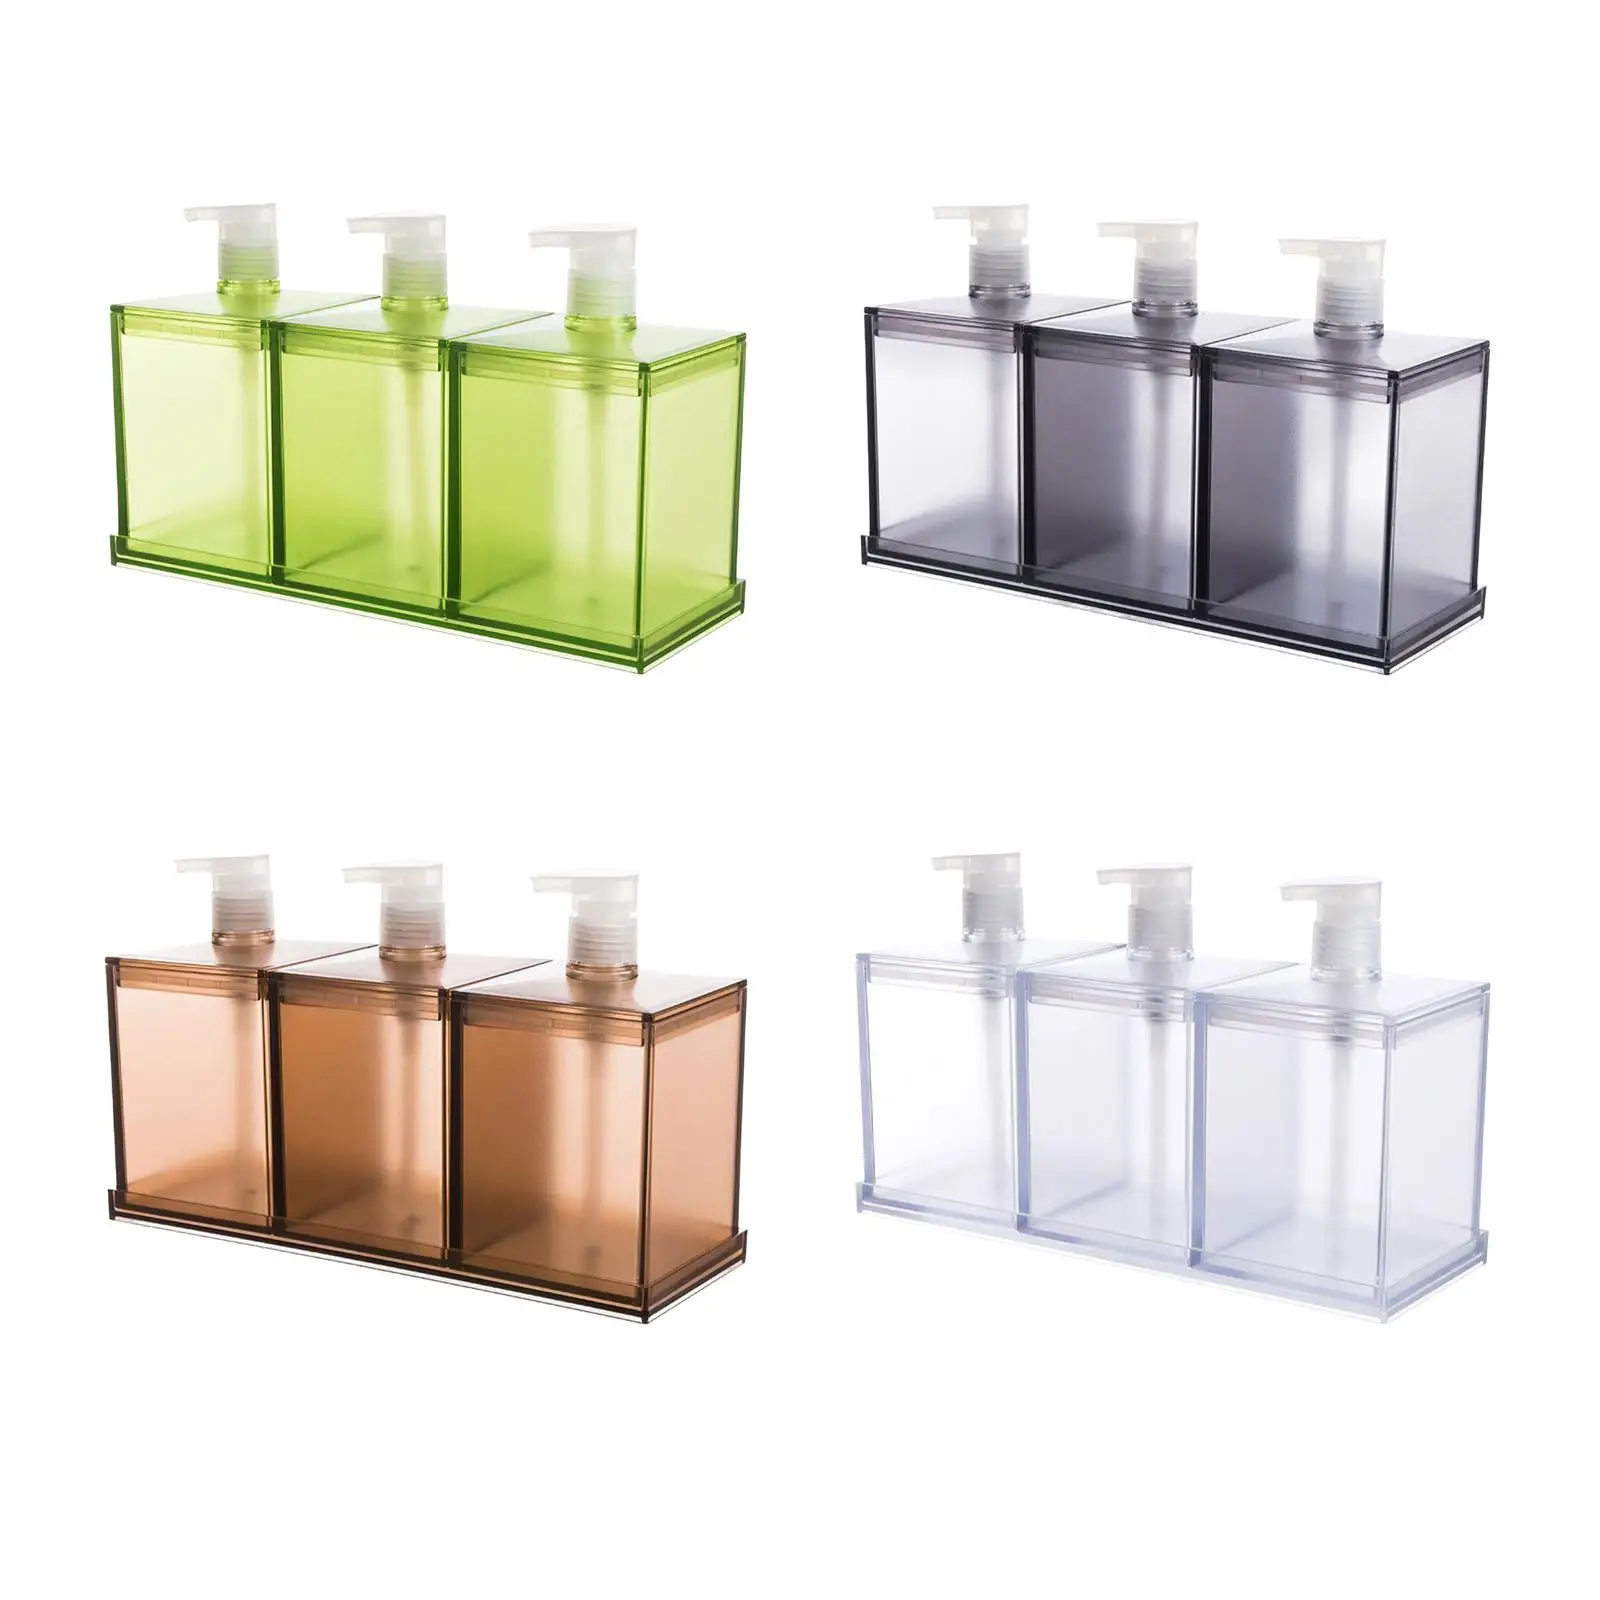 3 Pcs/Set Lotion Dispenser Bottle Shower Gel Container Reusable Empty Bottle Empty Soap Pump Bottle for Restroom Office Kitchen